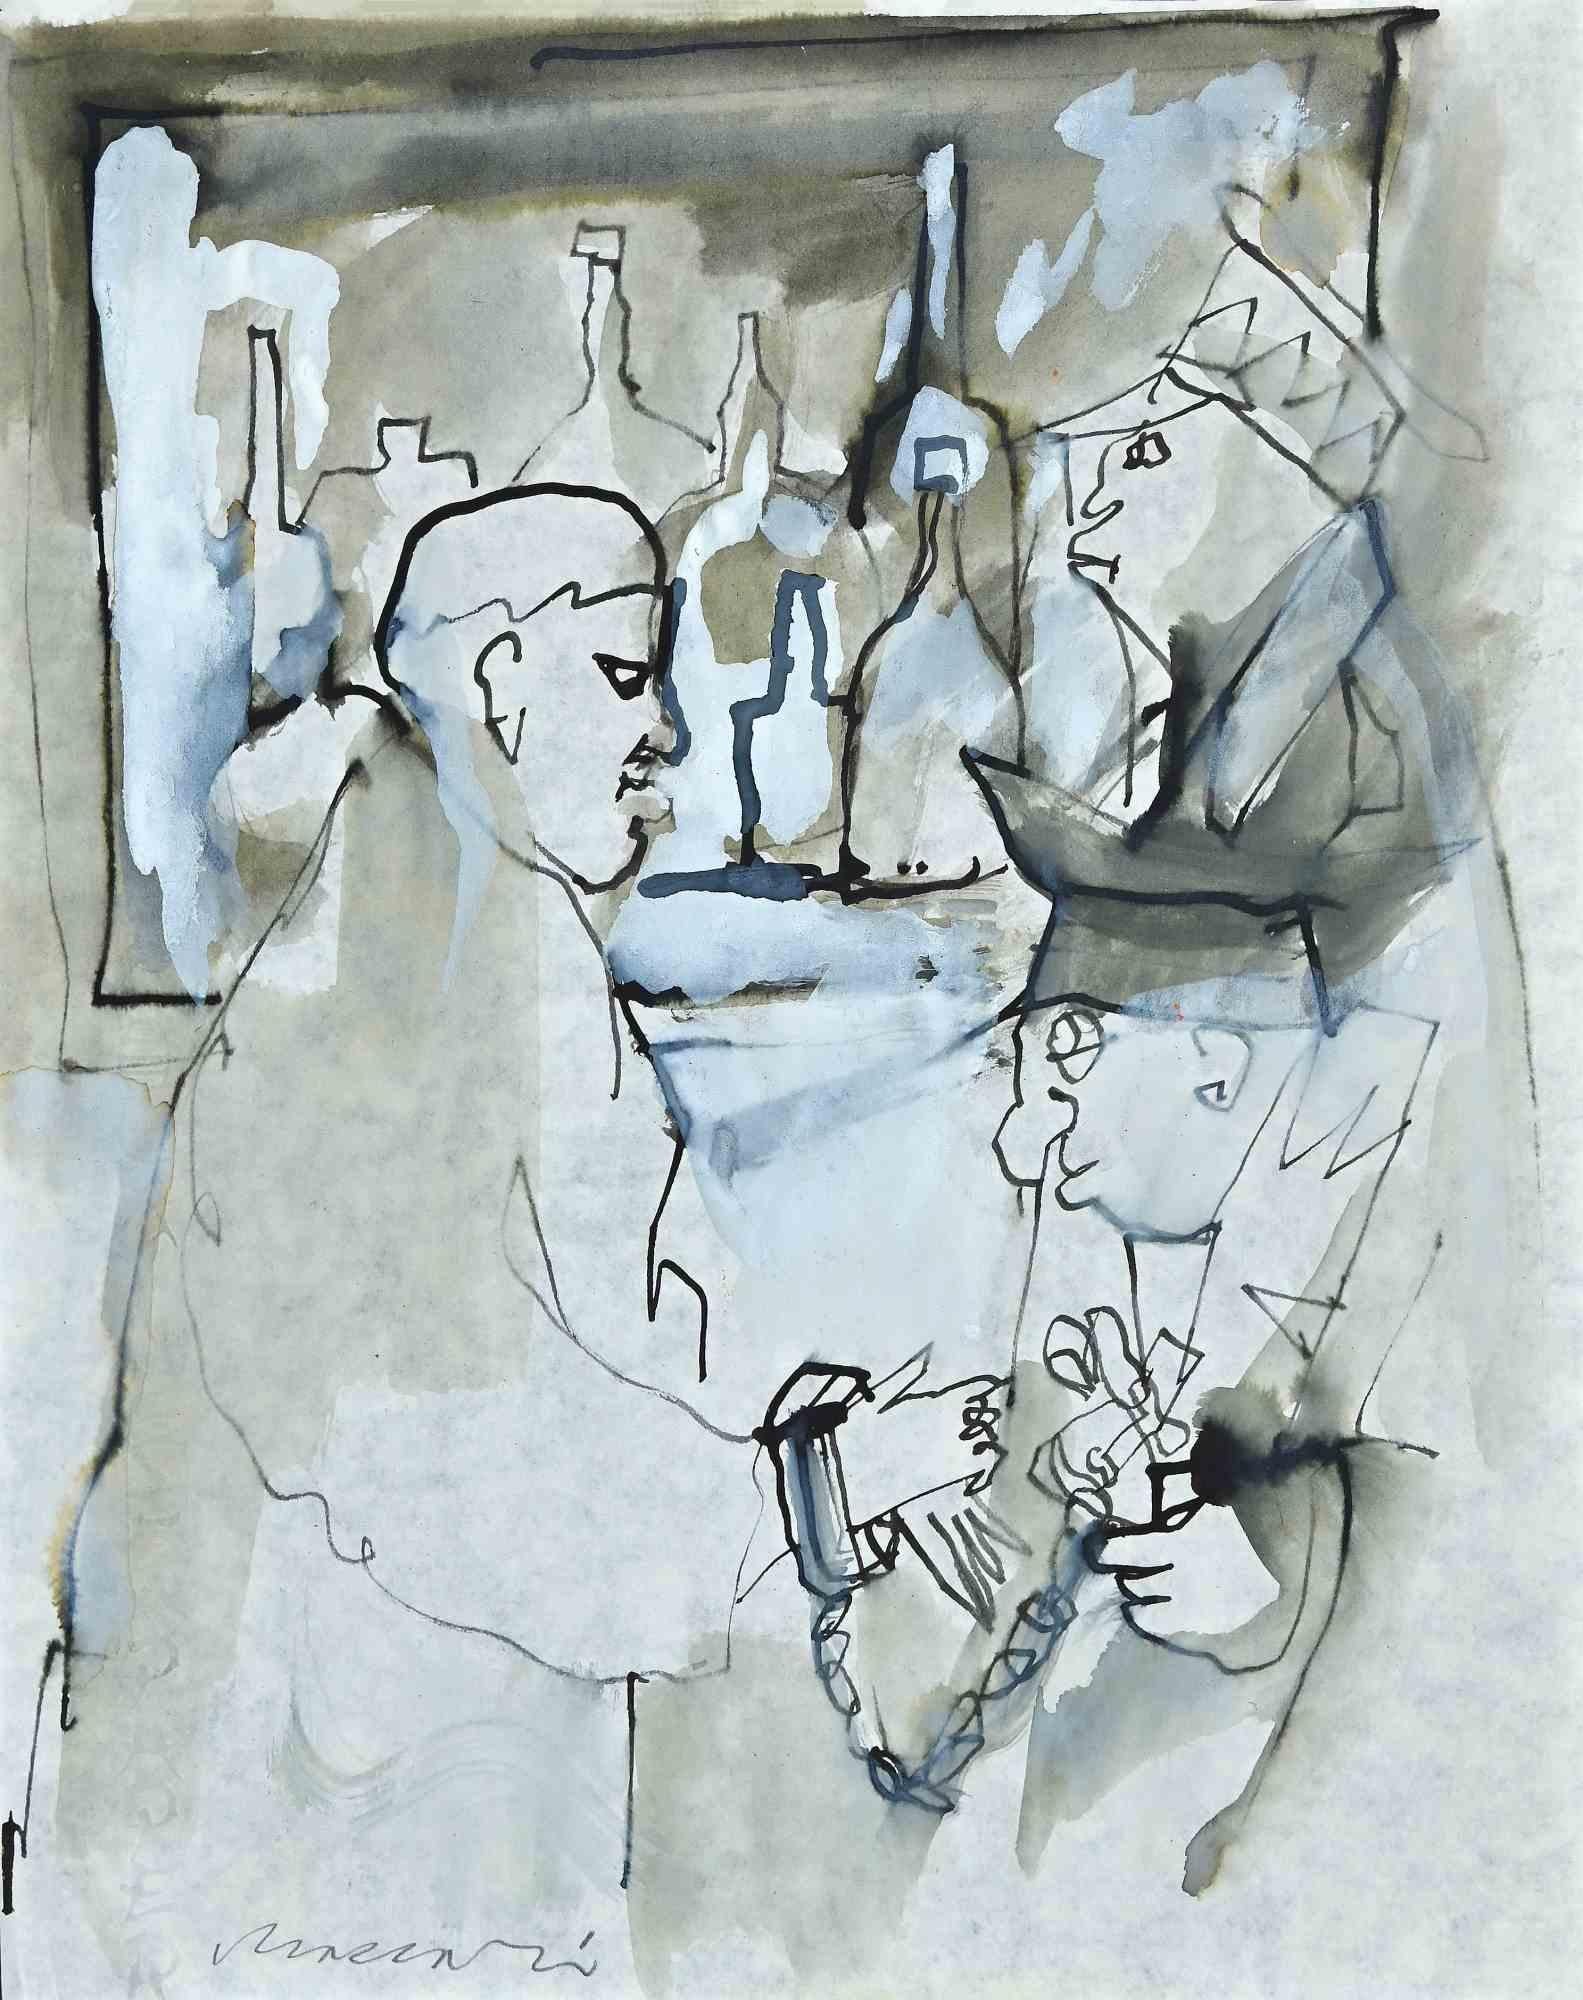  Mino Maccari Figurative Art - The Arrest of Giorgio Morandi - Drawing by M. Maccari - 1943